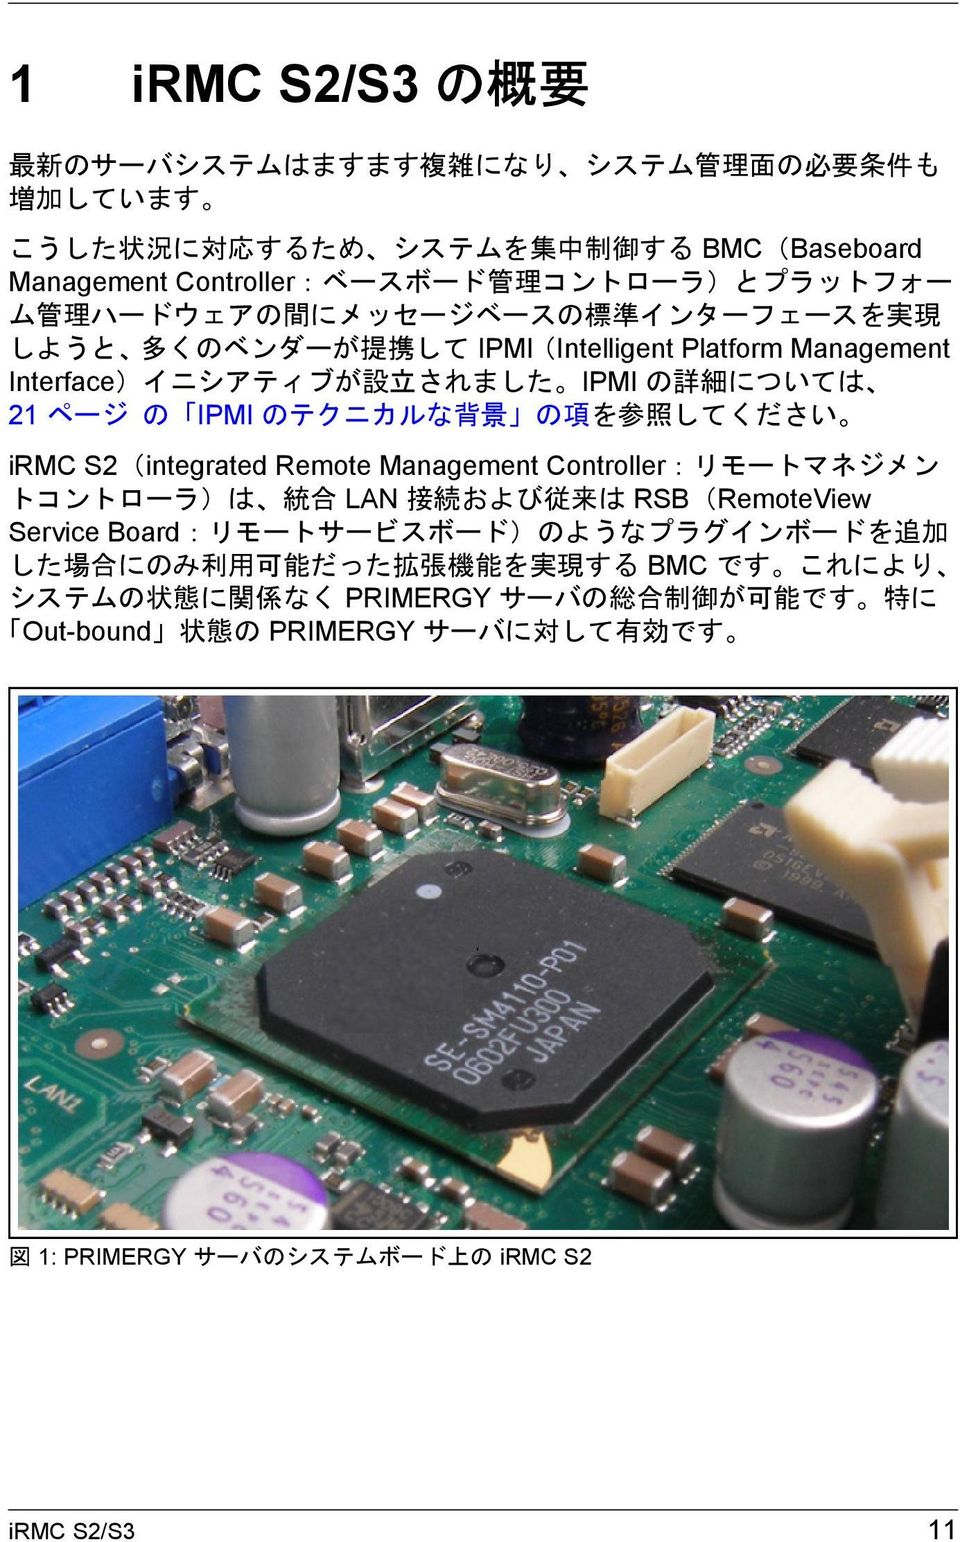 参 照 してください irmc S2(integrated Remote Management Controller:リモートマネジメン トコントローラ)は 統 合 LAN 接 続 および 従 来 は RSB(RemoteView Service Board:リモートサービスボード)のようなプラグインボードを 追 加 した 場 合 にのみ 利 用 可 能